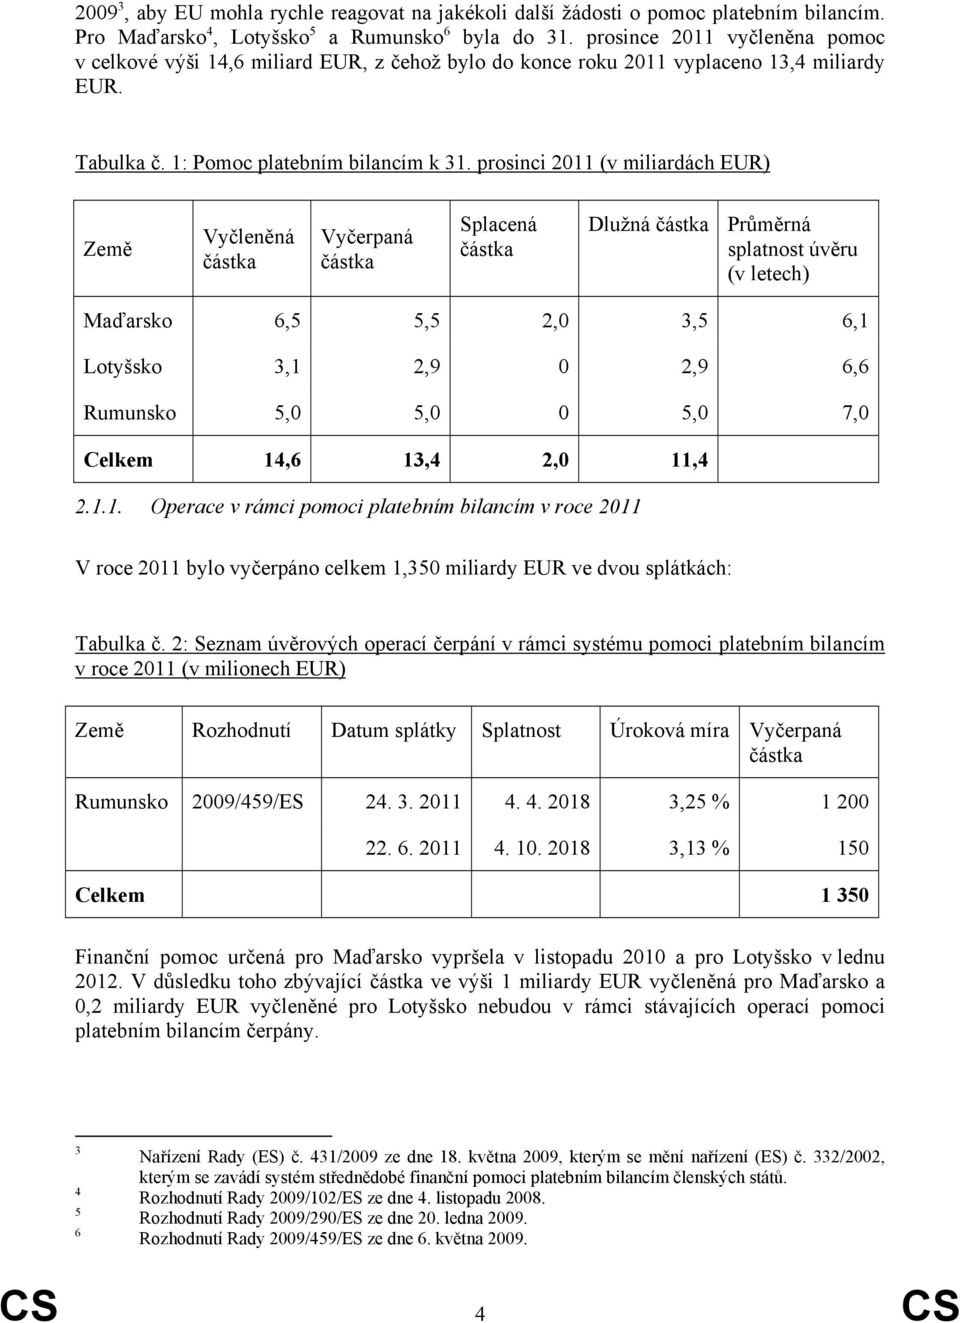 prosinci 2011 (v miliardách EUR) Země Vyčleněná částka Vyčerpaná částka Splacená částka Dlužná částka Průměrná splatnost úvěru (v letech) Maďarsko 6,5 5,5 2,0 3,5 6,1 Lotyšsko 3,1 2,9 0 2,9 6,6